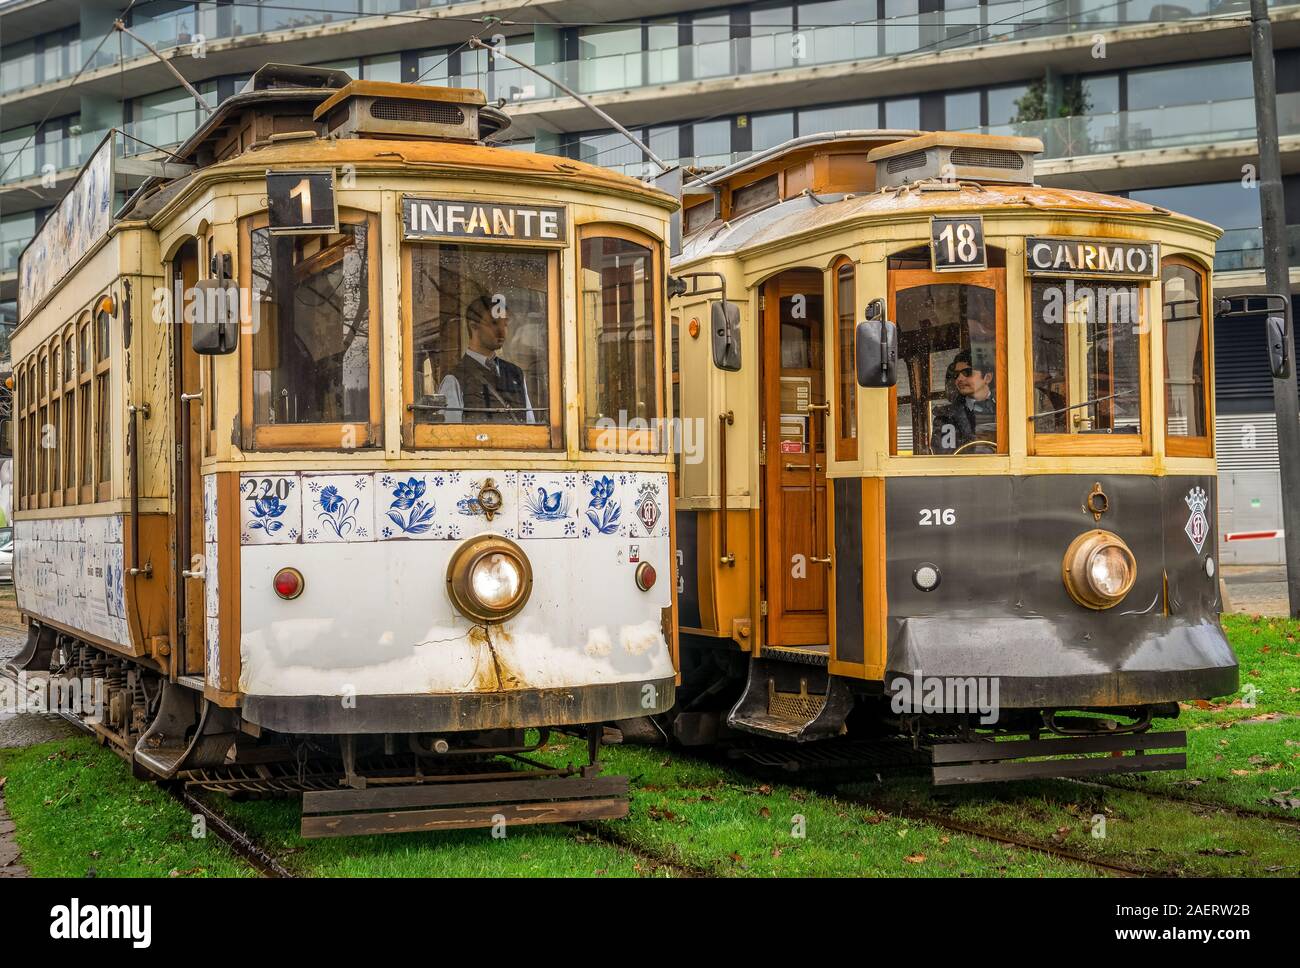 La ligne de tramway historique Vintage 1 & 18 avec structure en bois debout à côté de l'autre tandis que les conducteurs de tram discussion avant qu'ils conduisent sur à Porto Banque D'Images